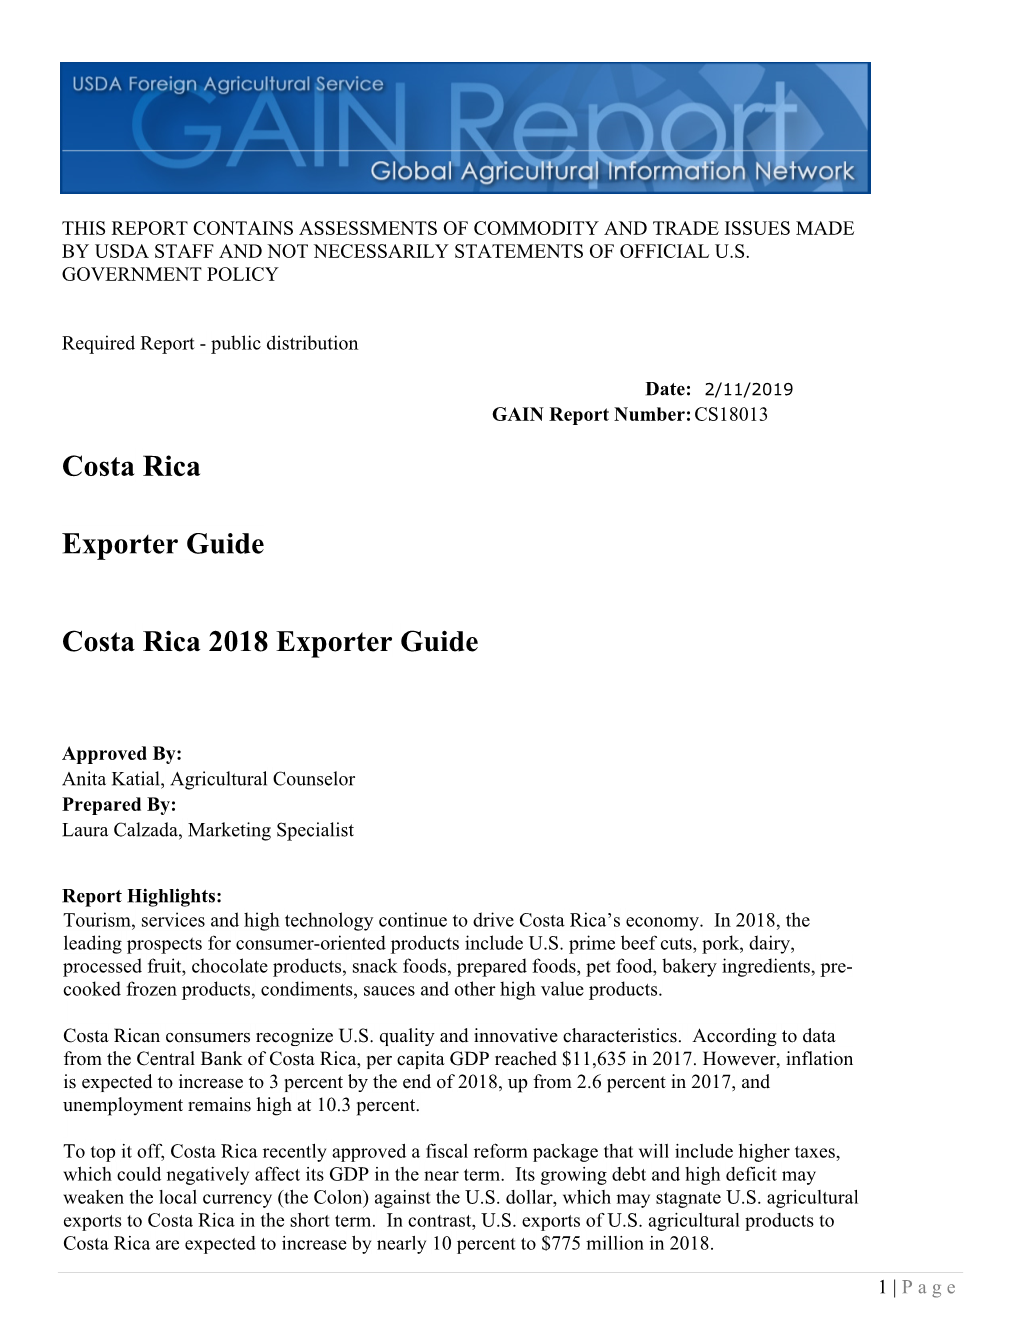 Costa Rica Exporter Guide Costa Rica 2018 Exporter Guide